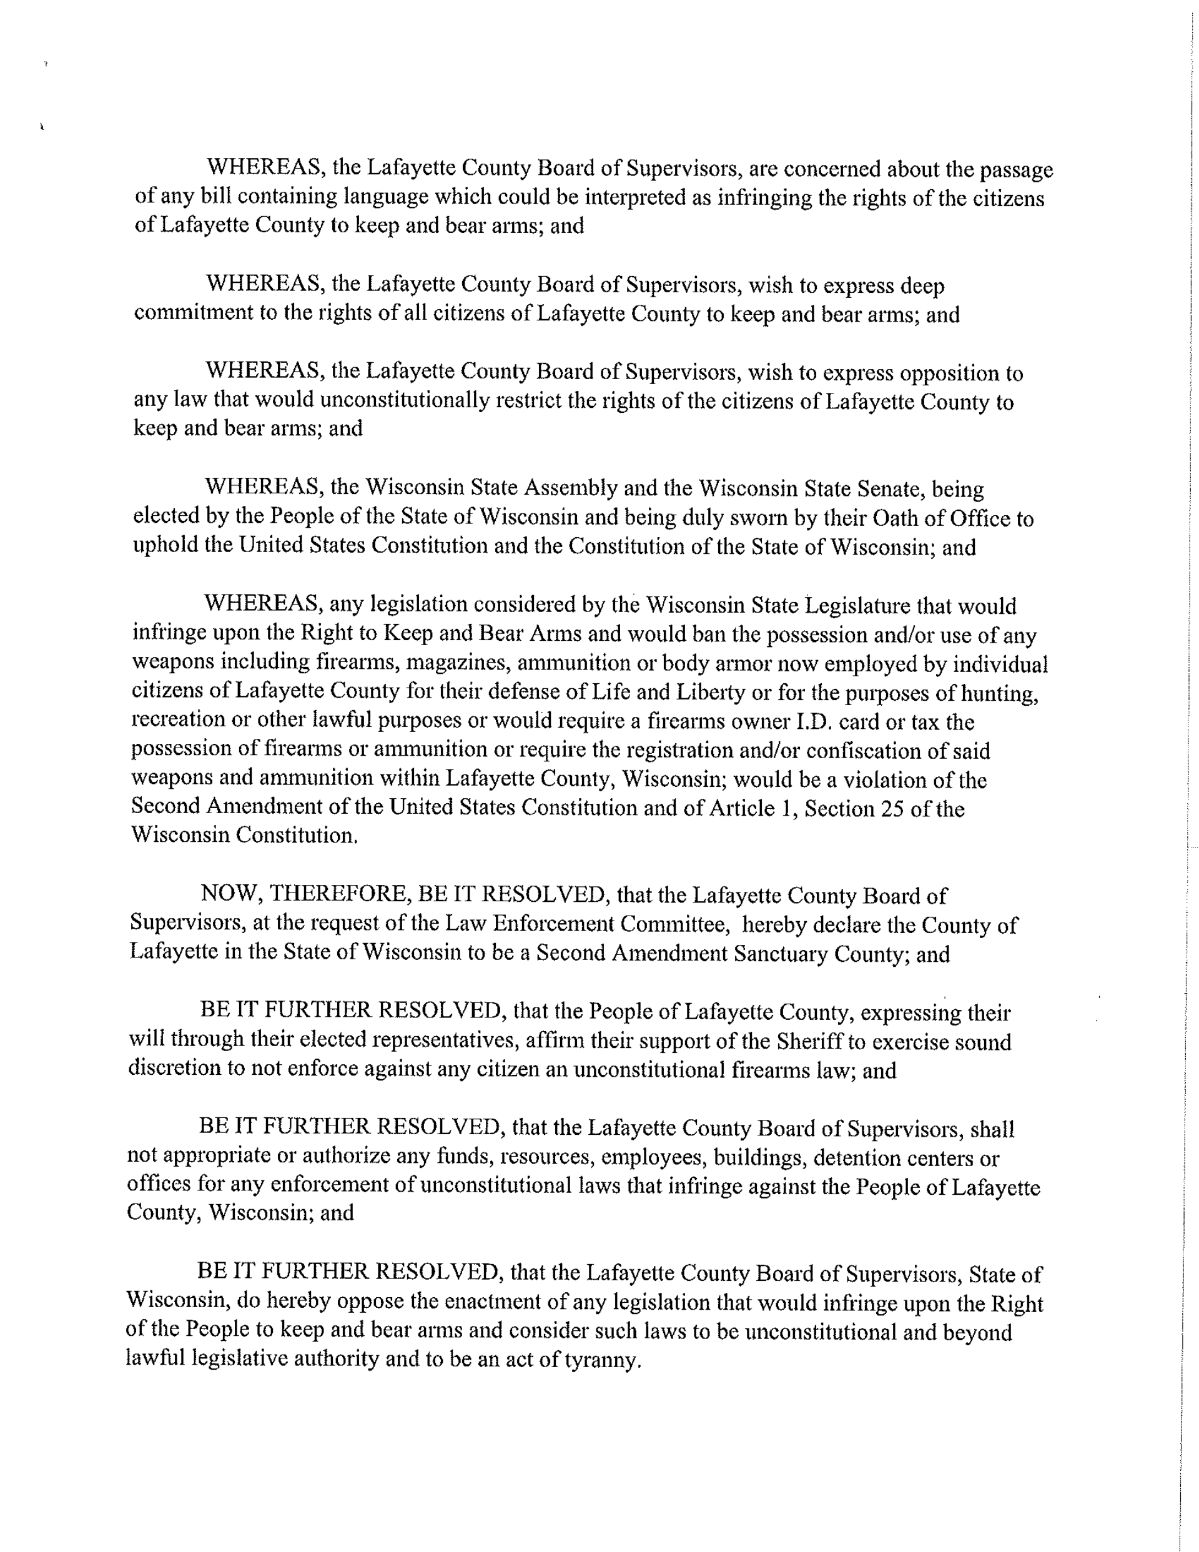 Lafayette County Second Amendment Sanctuary Resolution PG - 2